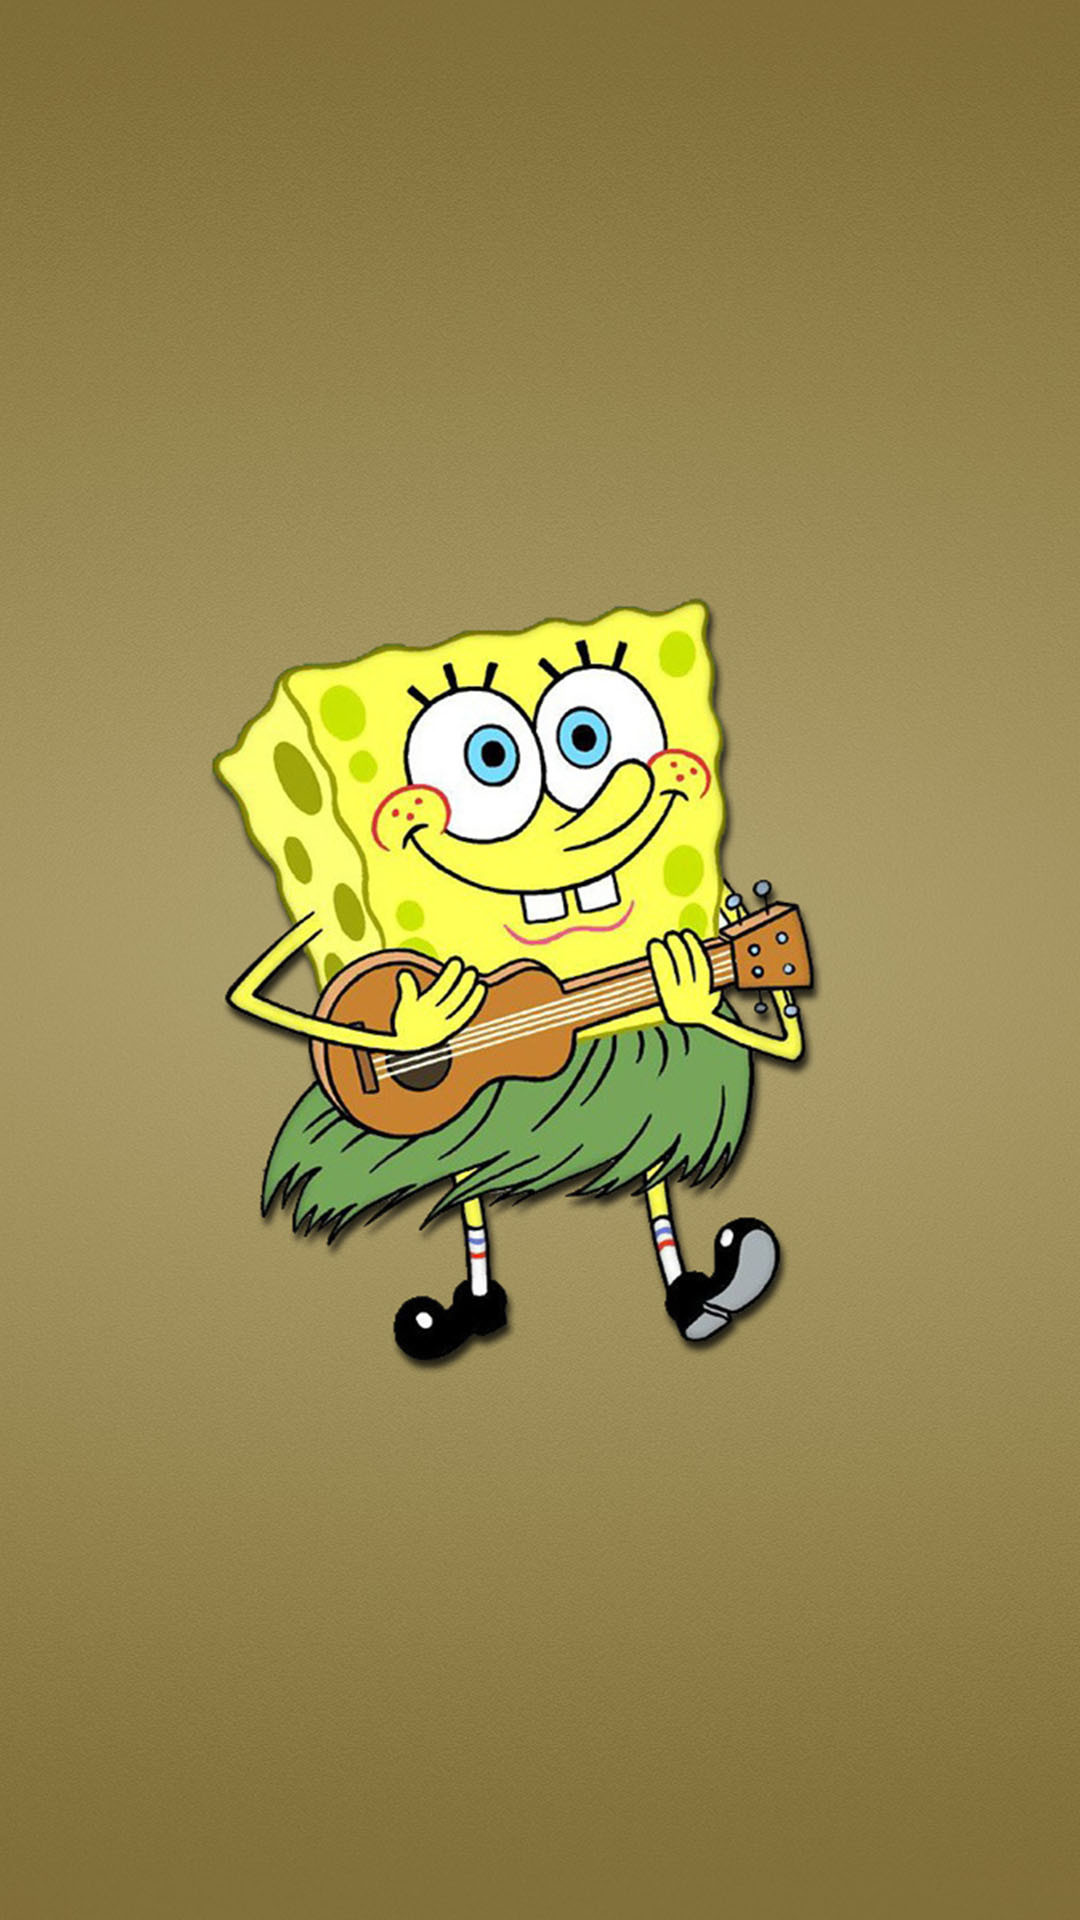 1080x1920 spongebob guitar funny wallpaper